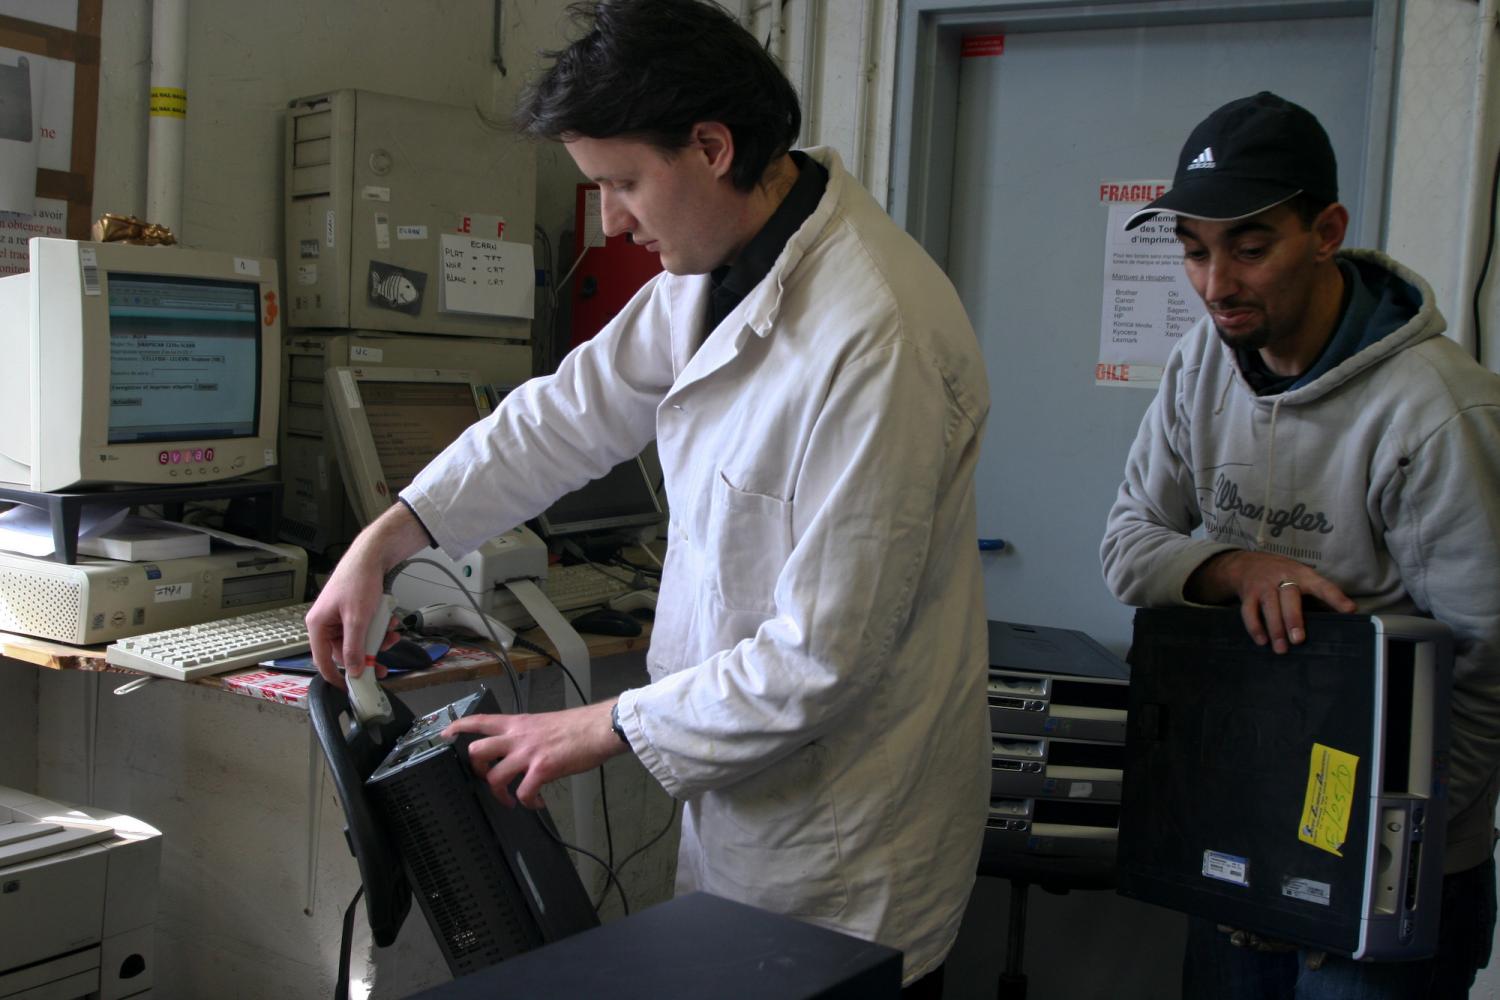 A l'entrée en stock, Vincent et Salim posent des codes barre sur les ordinateurs. Paris, avril 2009.